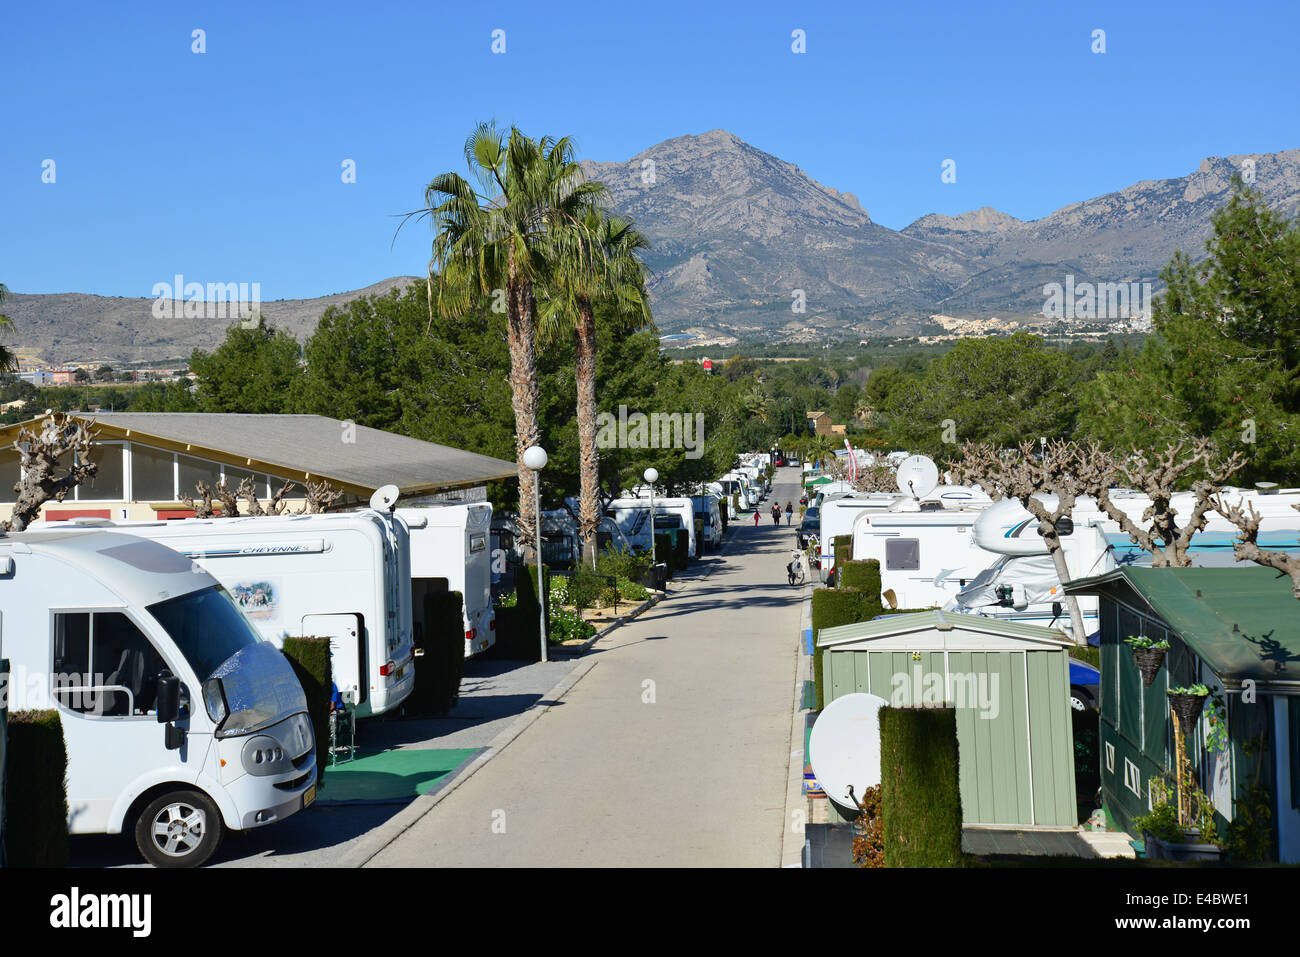 El Raco Camping, Avenue Doctor Severo Ochoa, Benidorm, Costa Blanca, Alicante Province, Kingdom of Spain Stock Photo